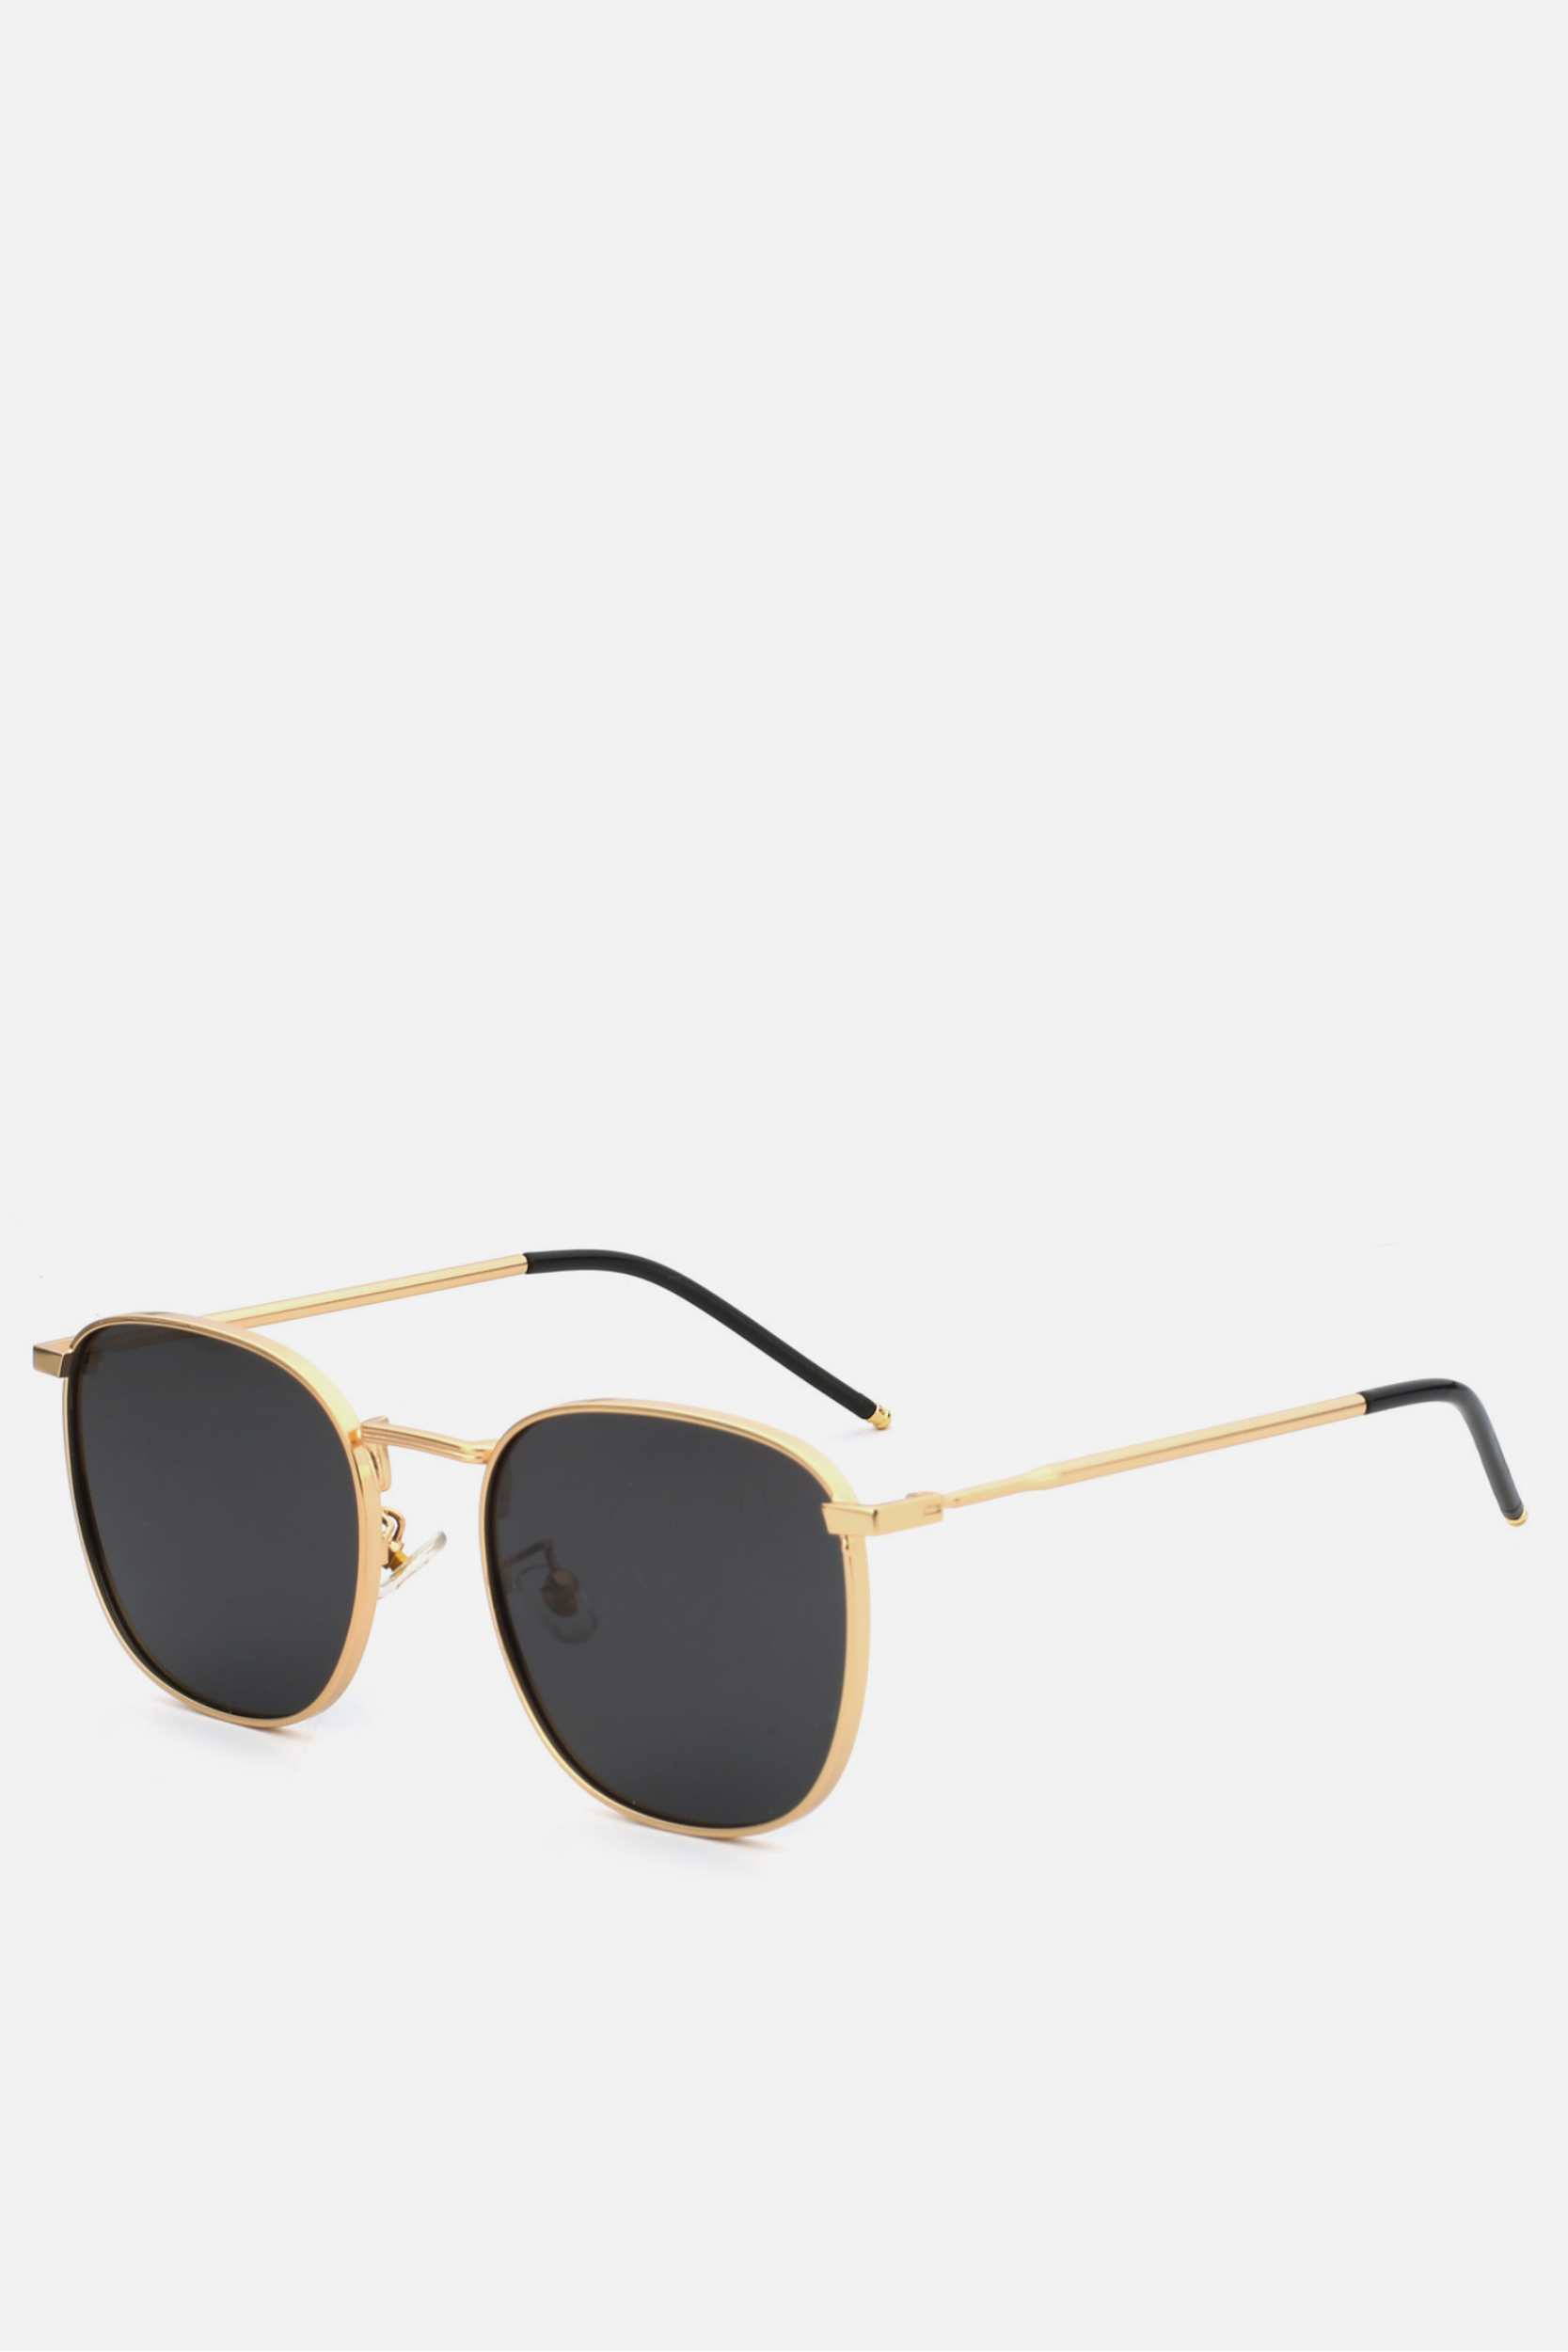 MOROCCO Black Round Sunglasses